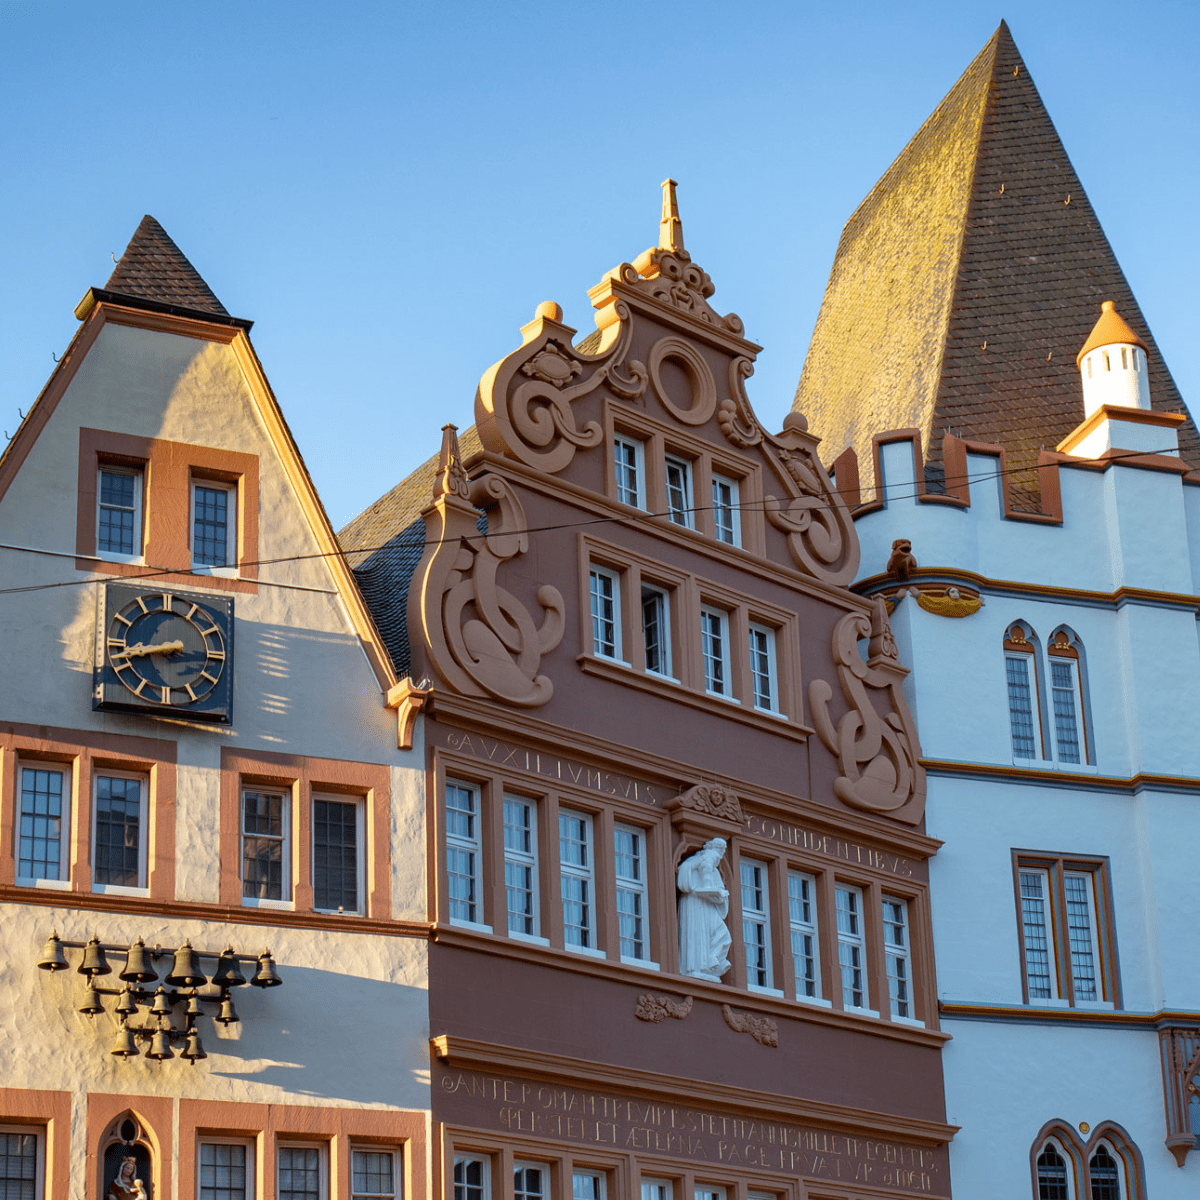 Altstadt Trier, Tipps für einen Tag